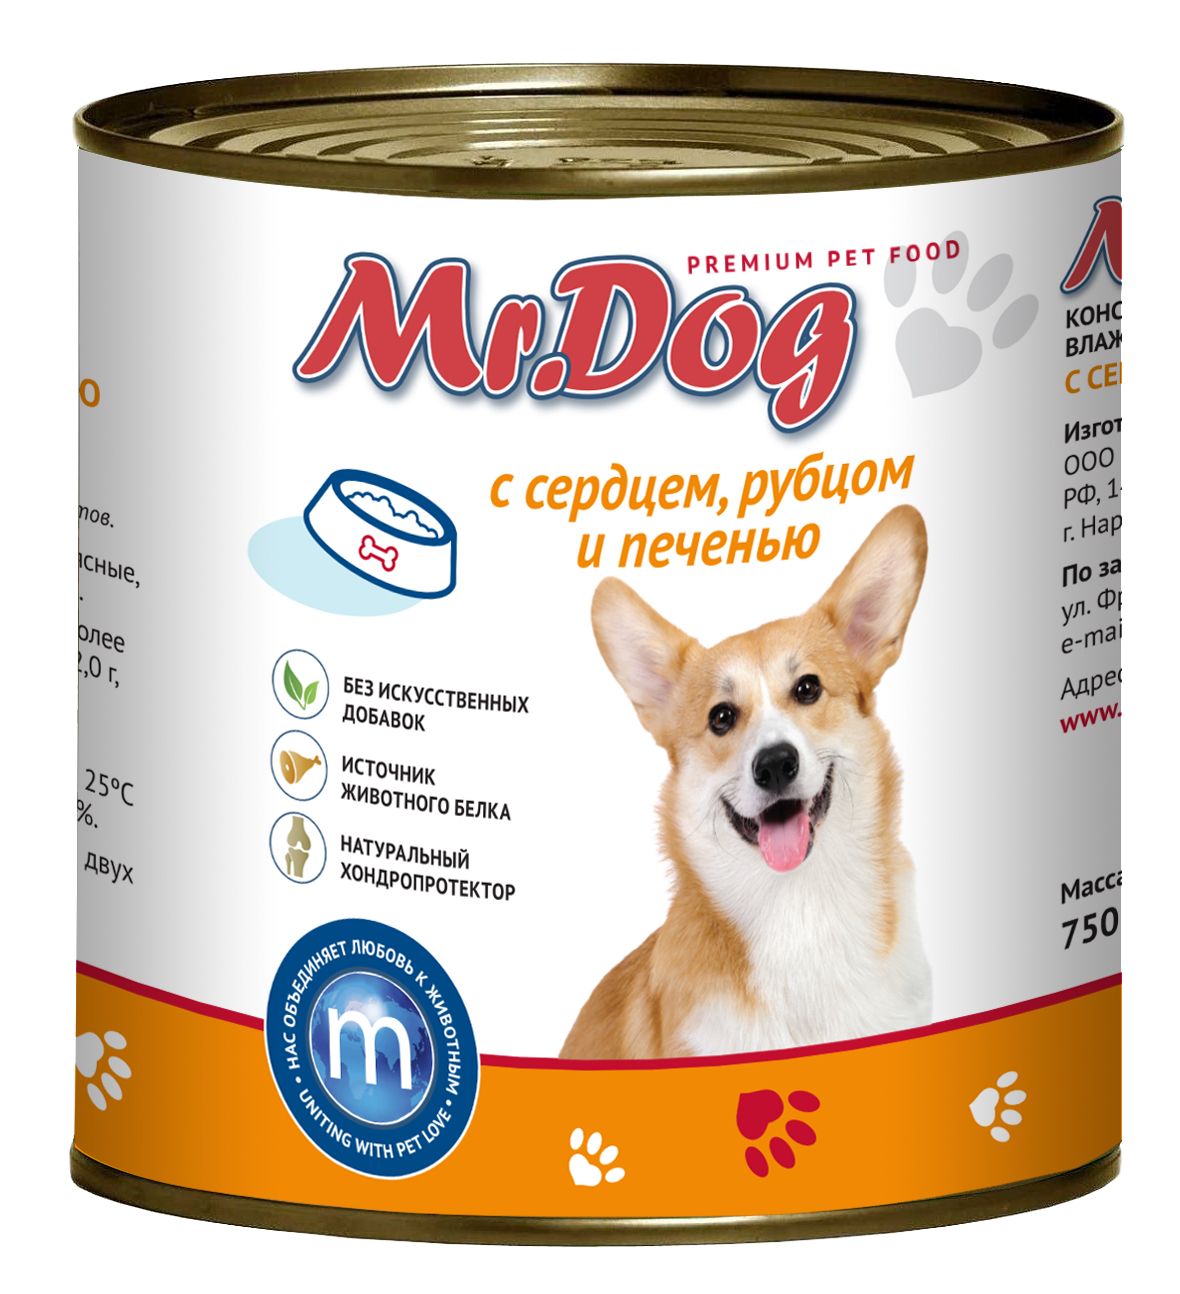 Mr.Dog Сердце/Рубец/Печень консервы для собак 750 гр 1